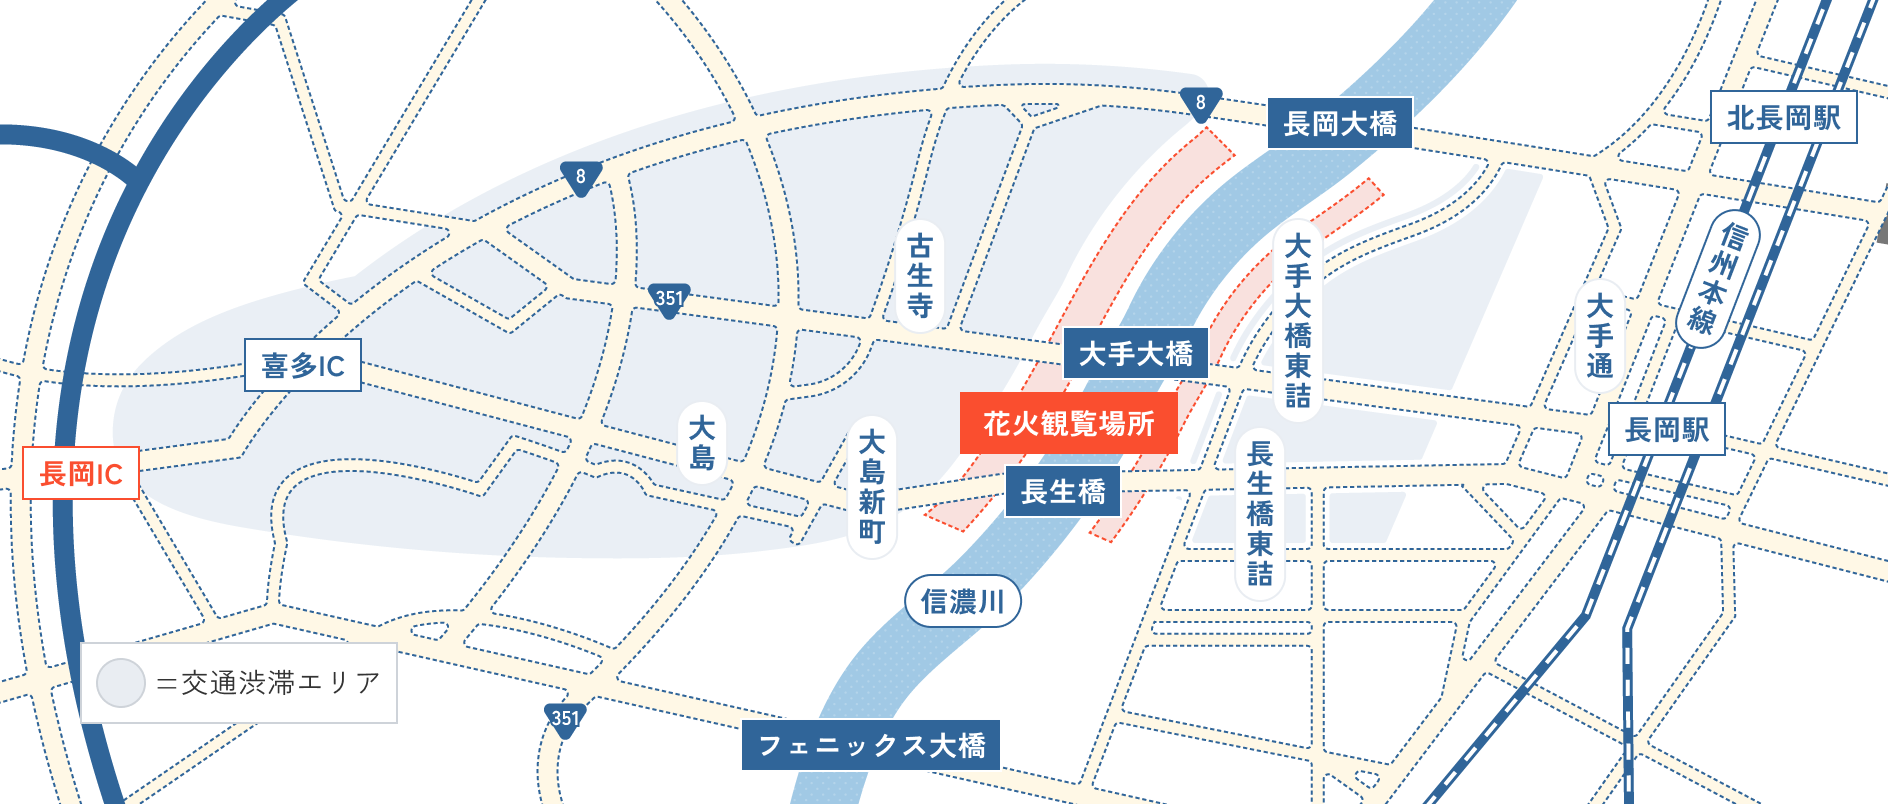 長岡まつり大花火大会の開催場所・会場マップ